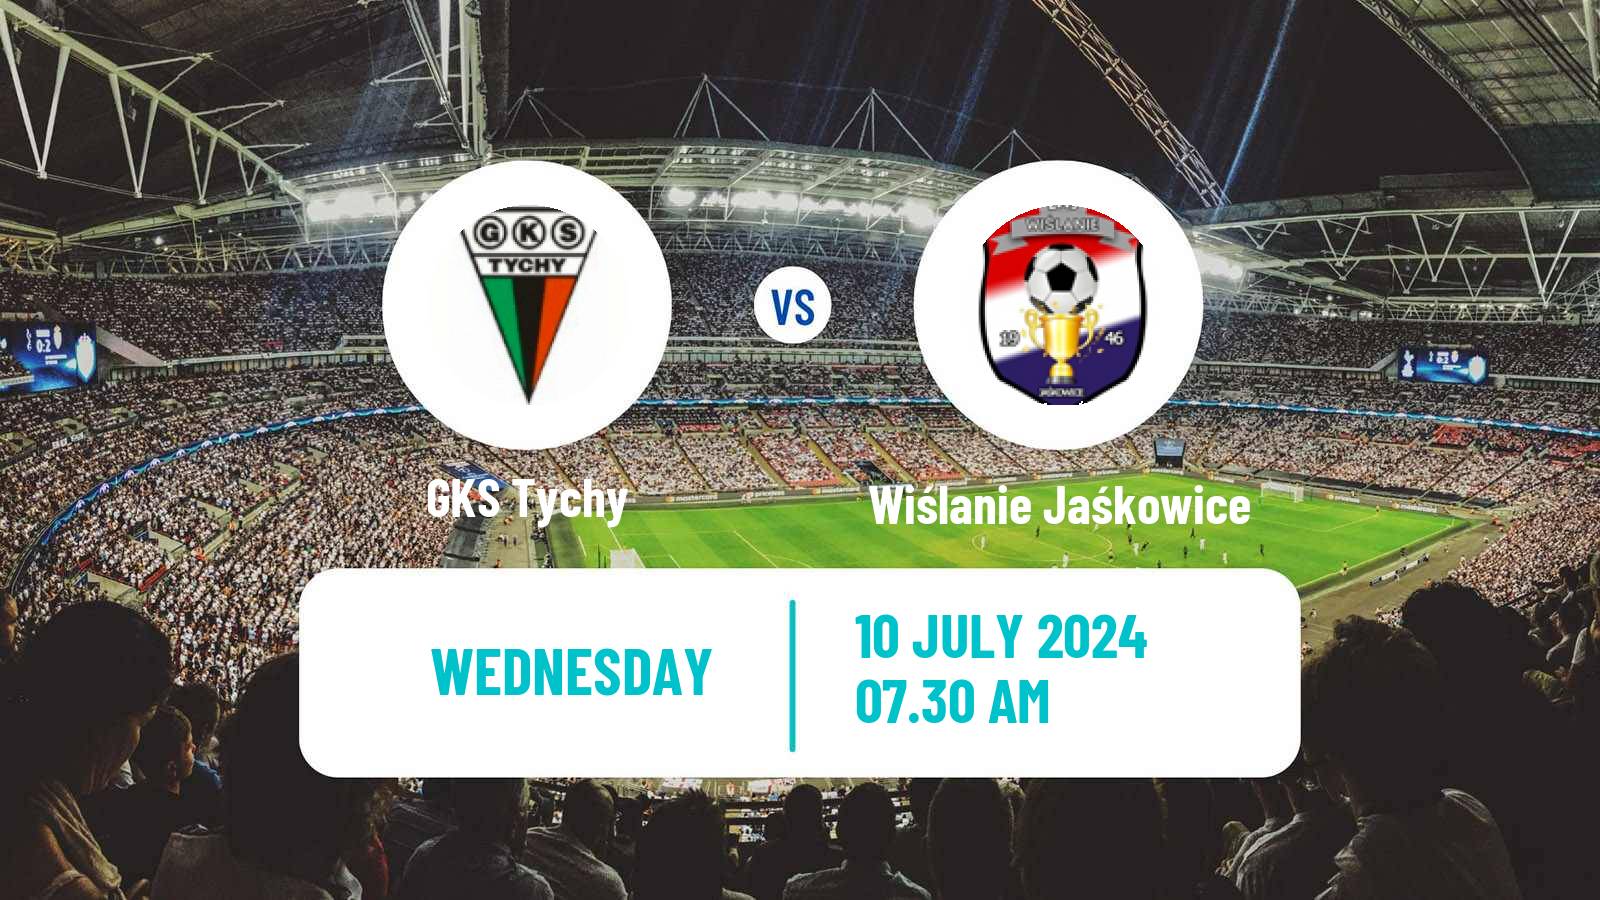 Soccer Club Friendly GKS Tychy - Wiślanie Jaśkowice